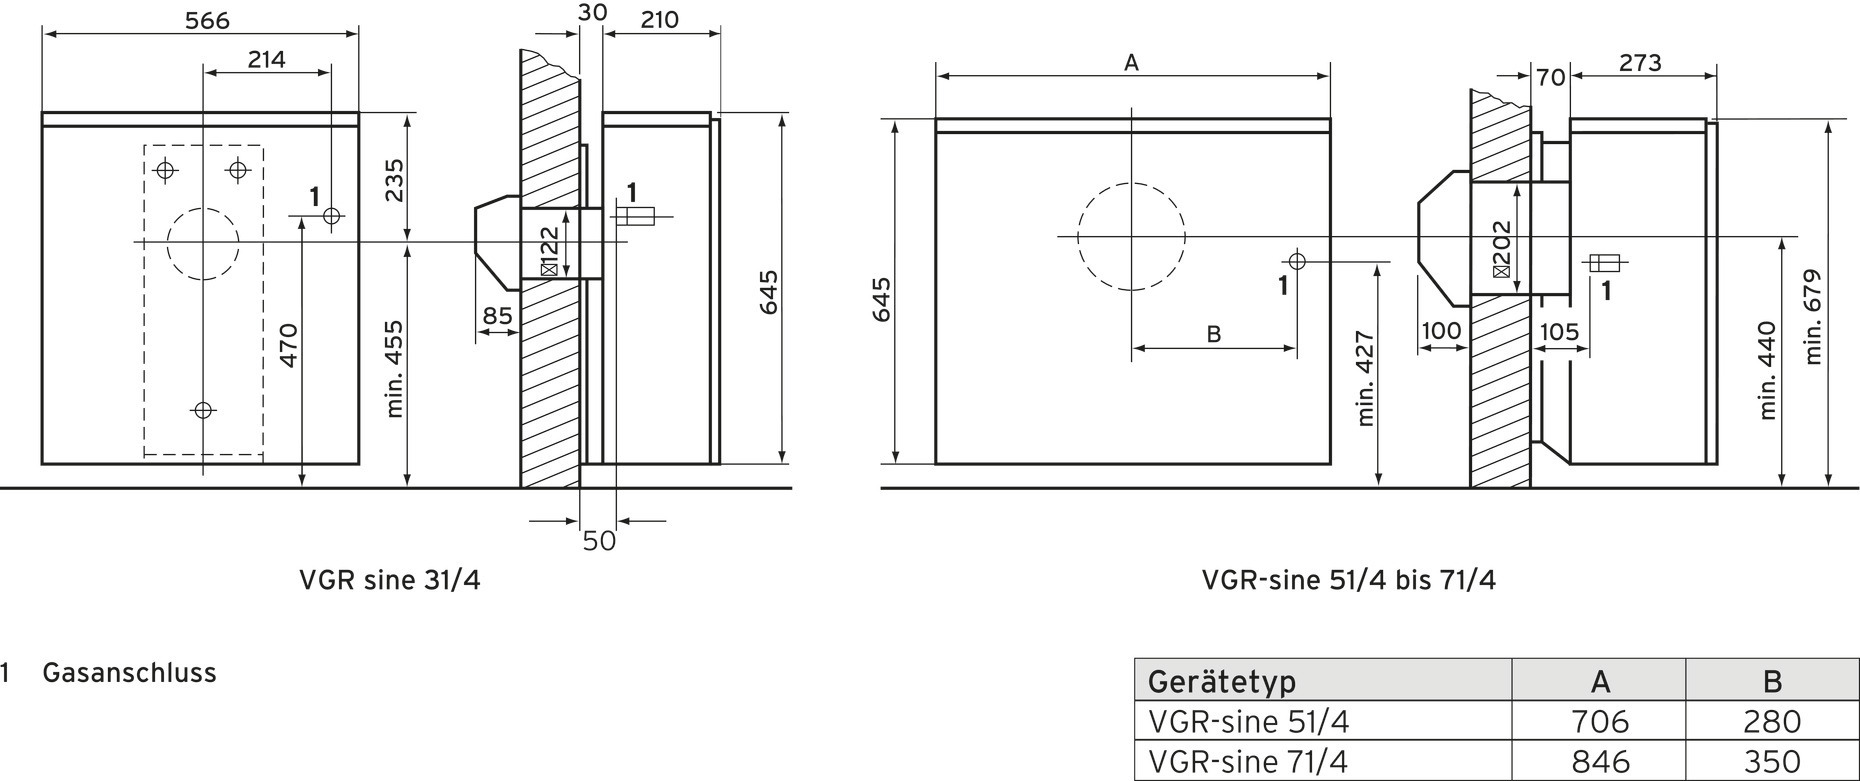 Vaillant Gas-Raumheizaut. VGR-sine 31/4E für Außenwandanschluss, cremeweiß/grau